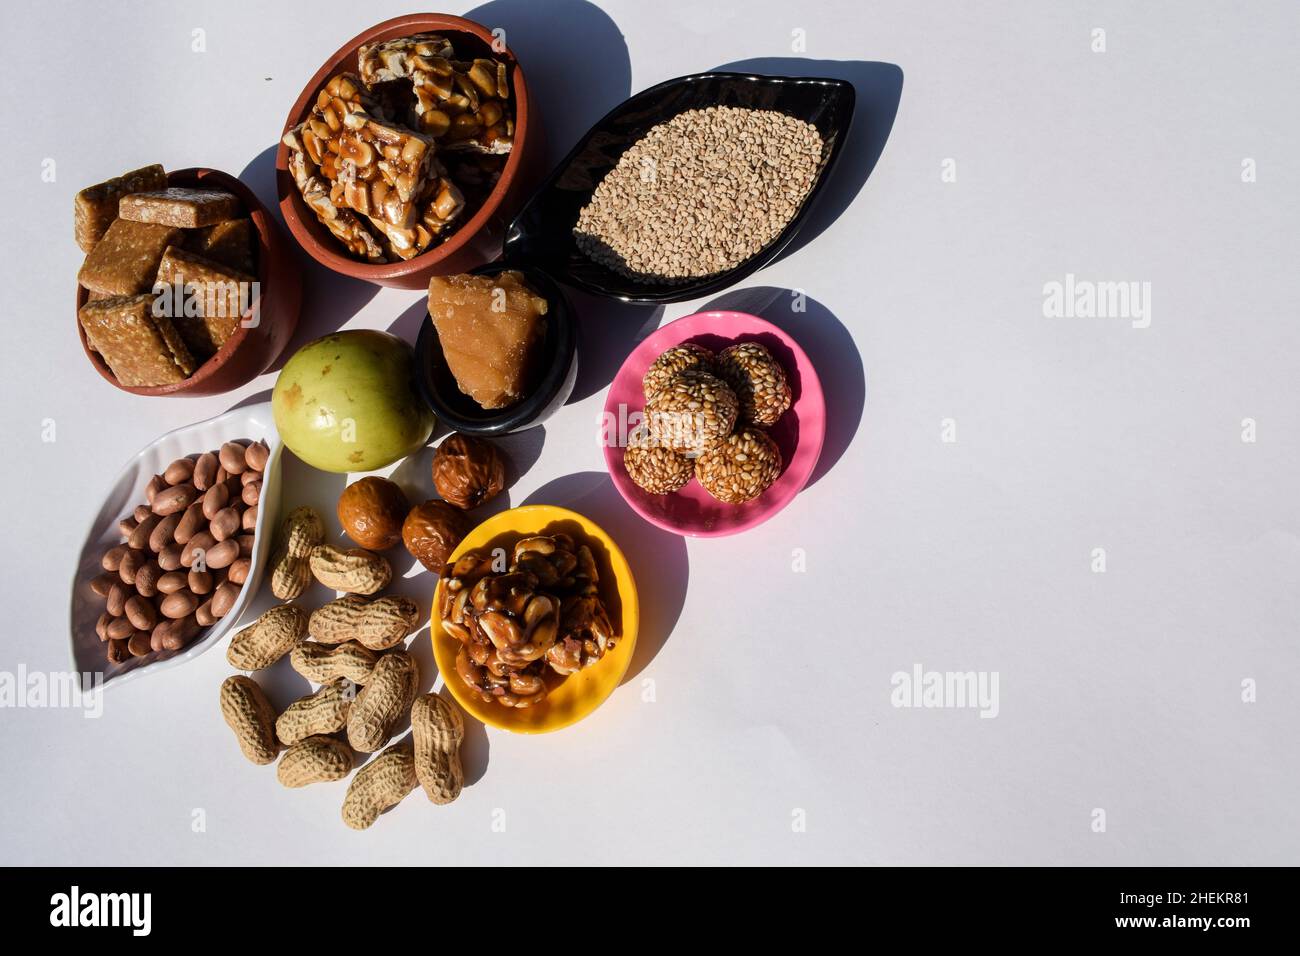 Makar sankranti festival traditions de servir et de manger Peanut chikki, graines de sésame laddu, til ladoo, pomme verte indienne bère, bora, arachides. Et Banque D'Images